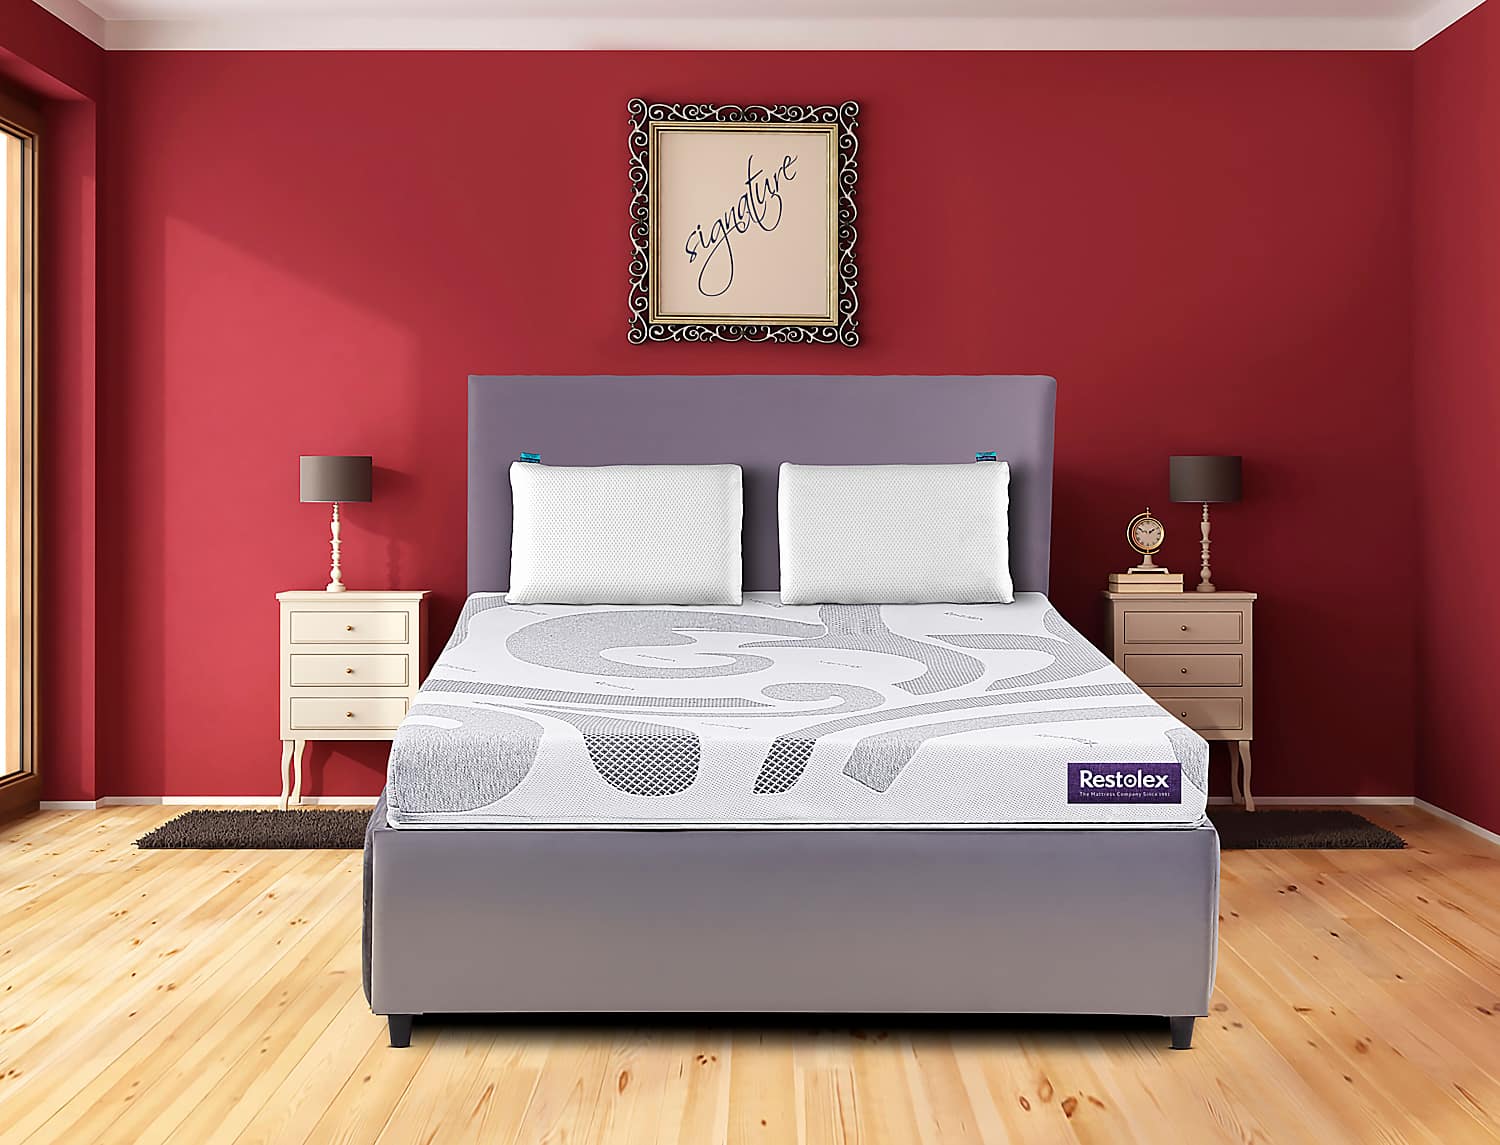 soft sheets for queen mattress